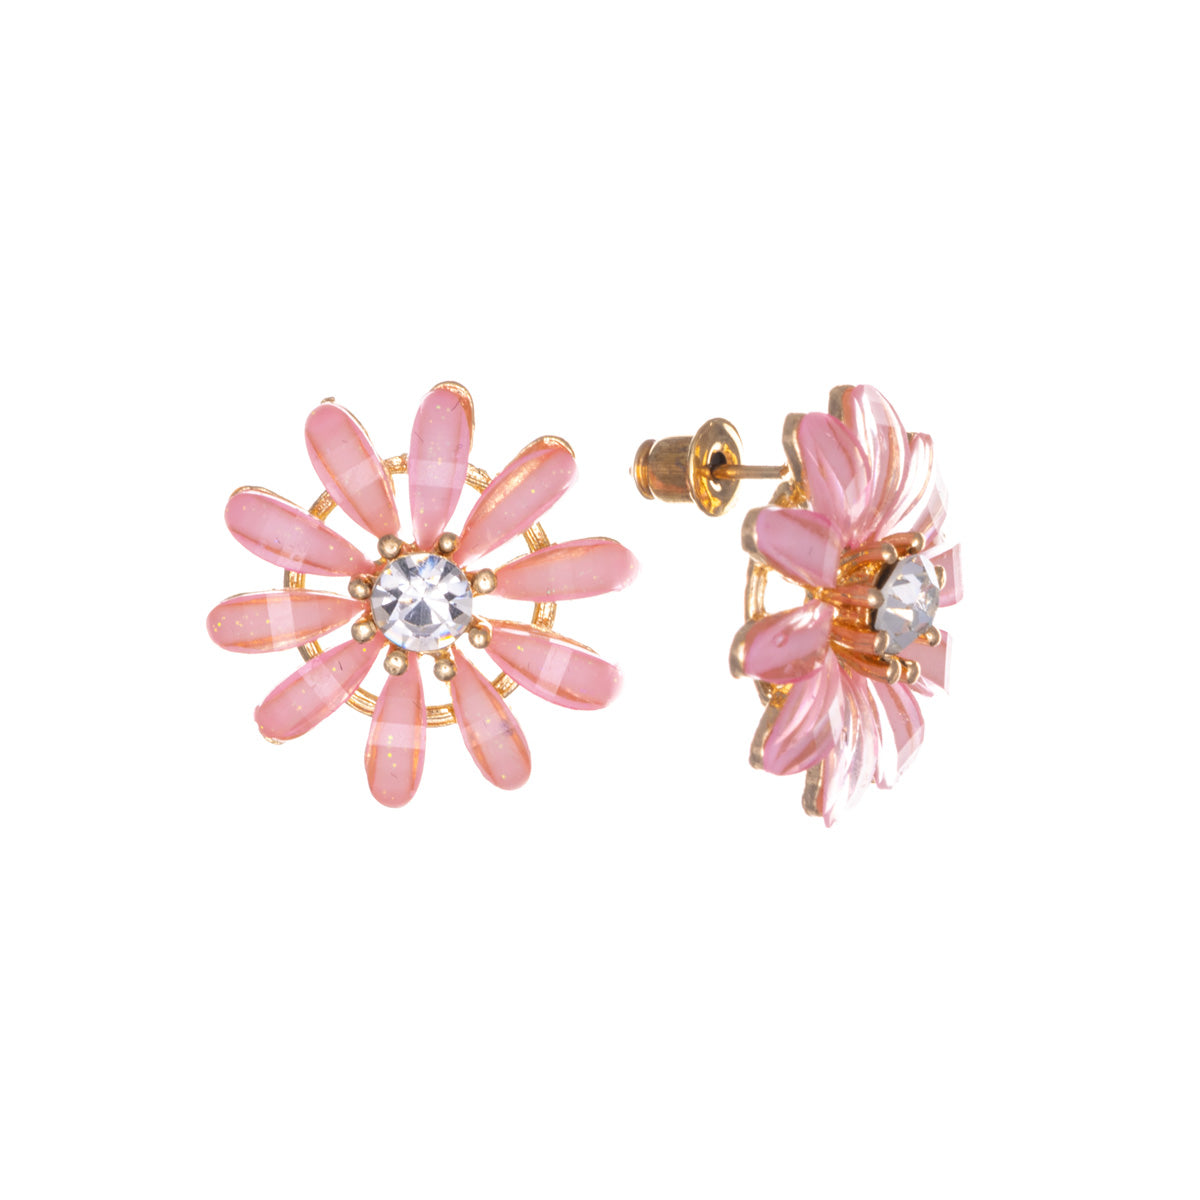 Stone flower earrings